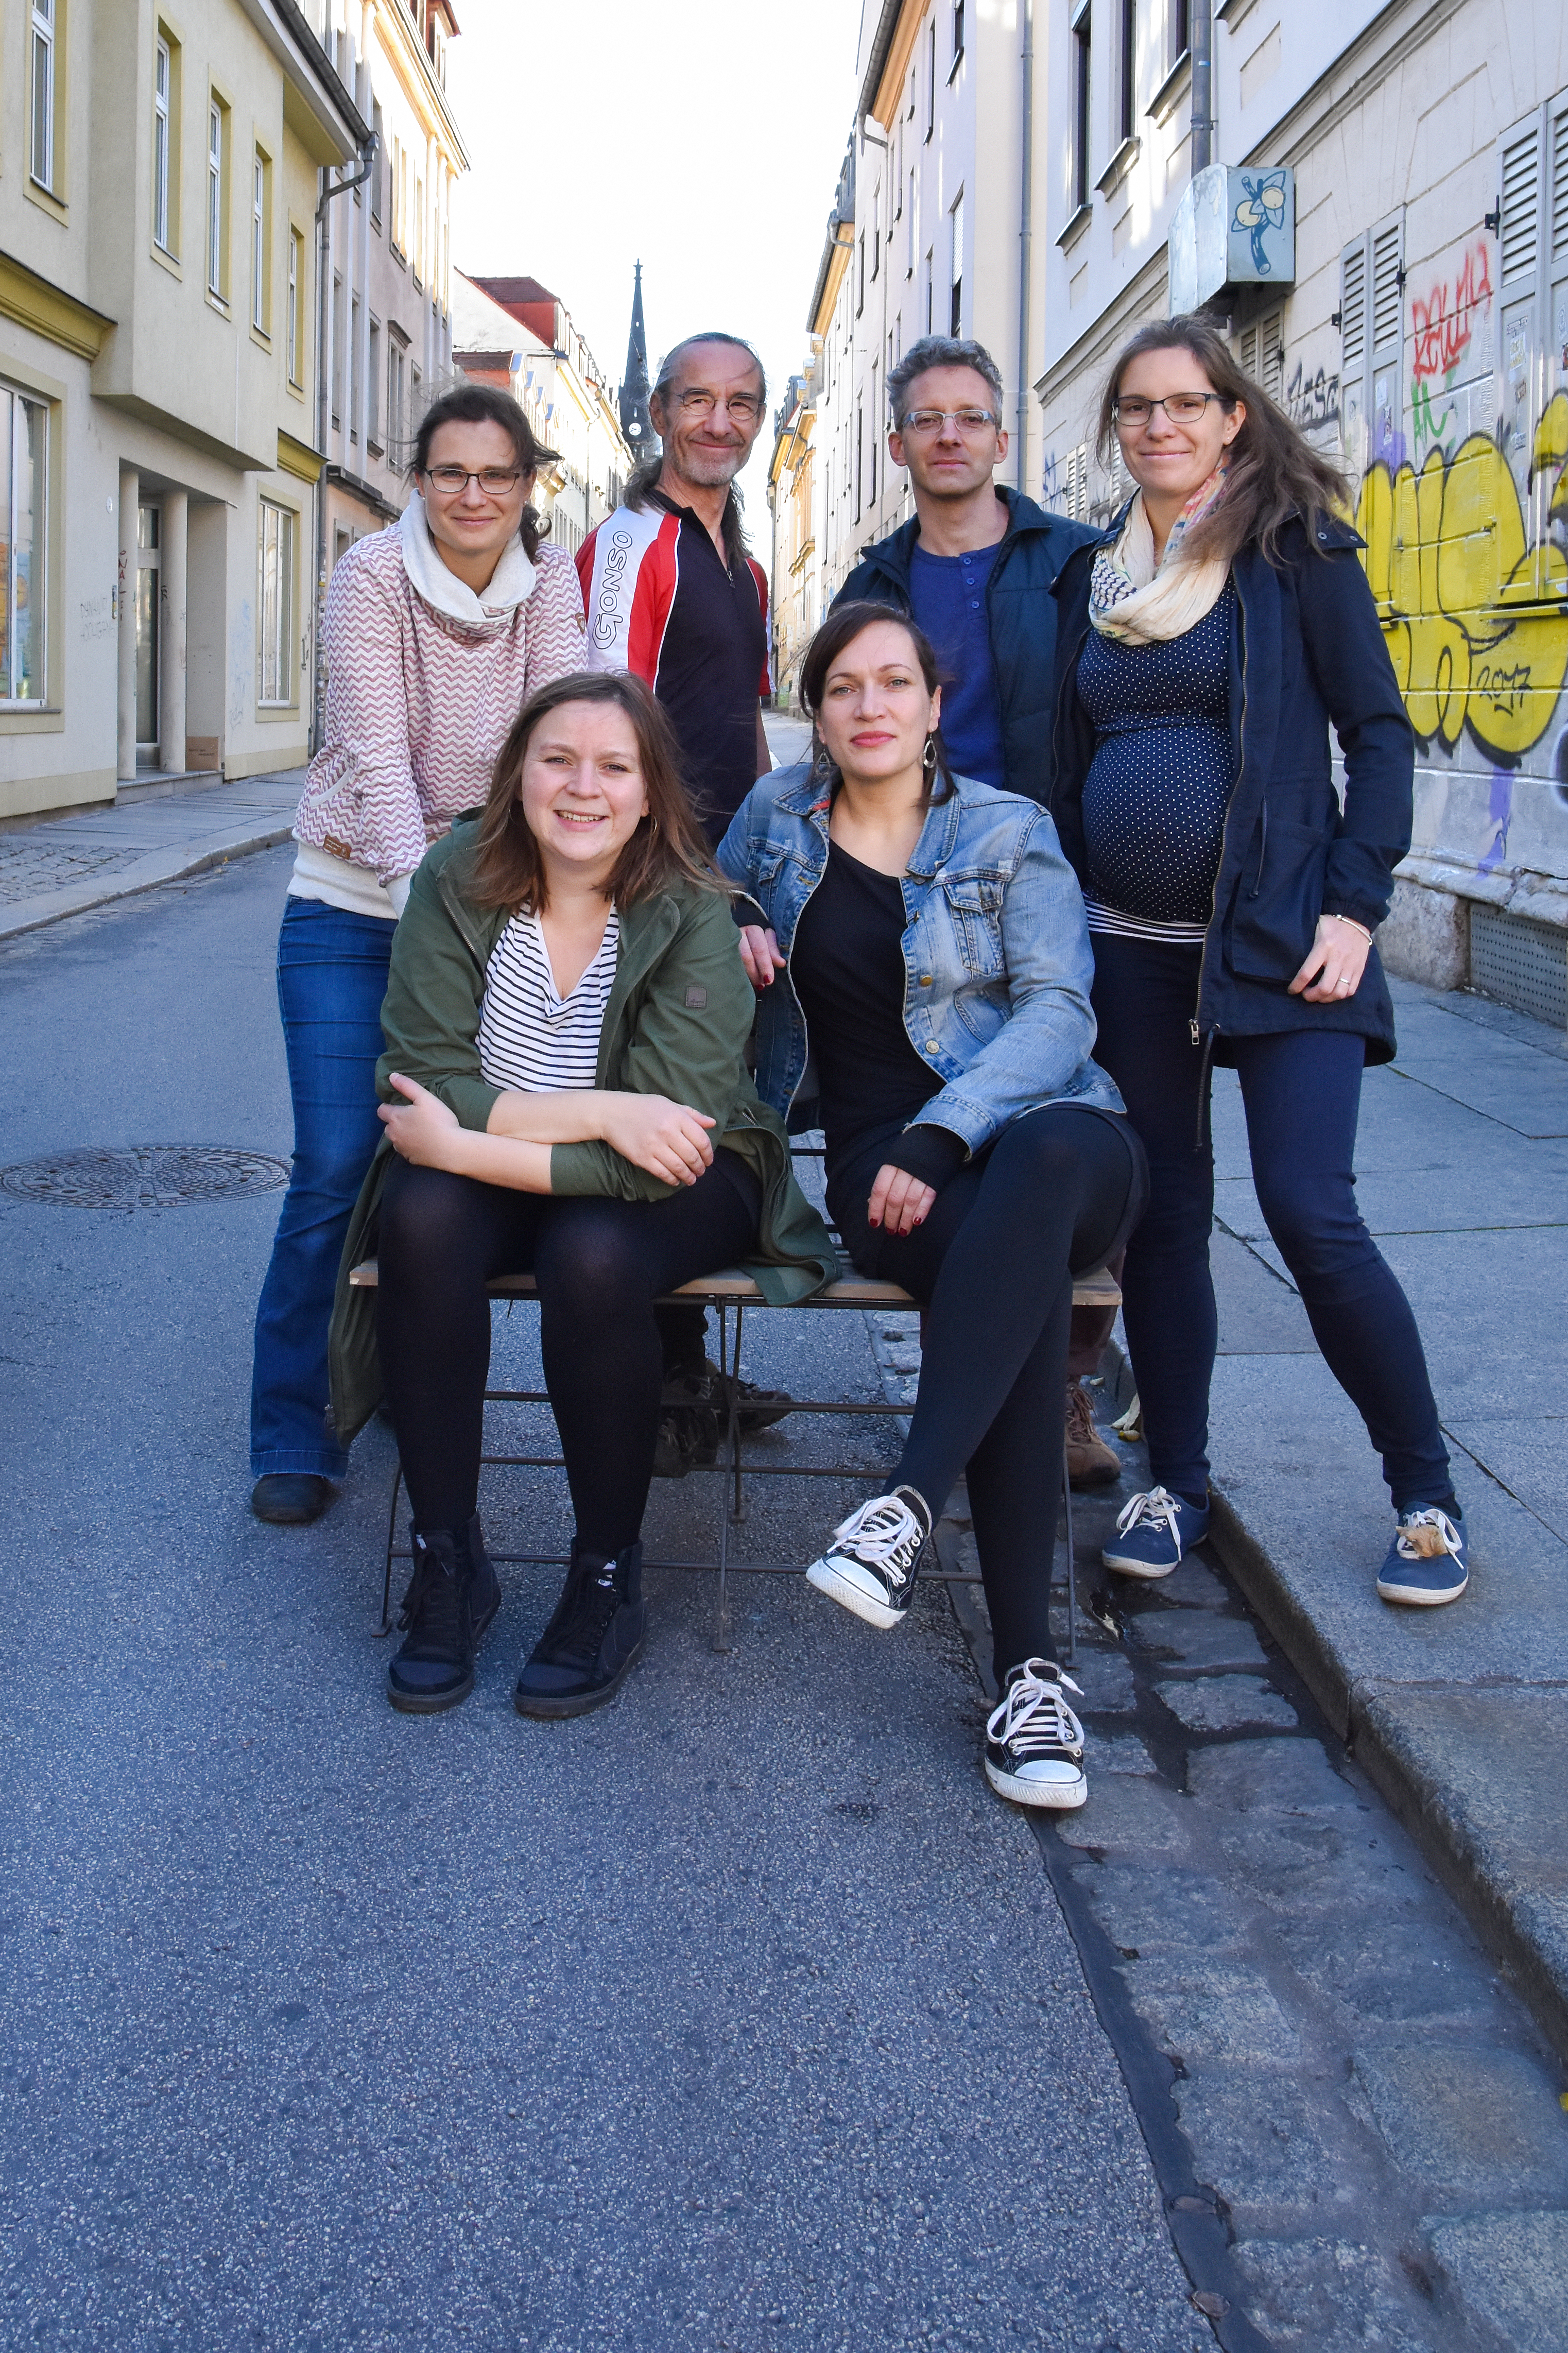 Gruppenfoto des ehrenamtlichen Projektteams auf einer Straße in der Dresdner Neustadt.Von links nach rechts: Julia Gerlach, Anna Betsch, Werner Becker, Uta Gensichen, Ralf Hupfer, Rosemarie Baldauf.